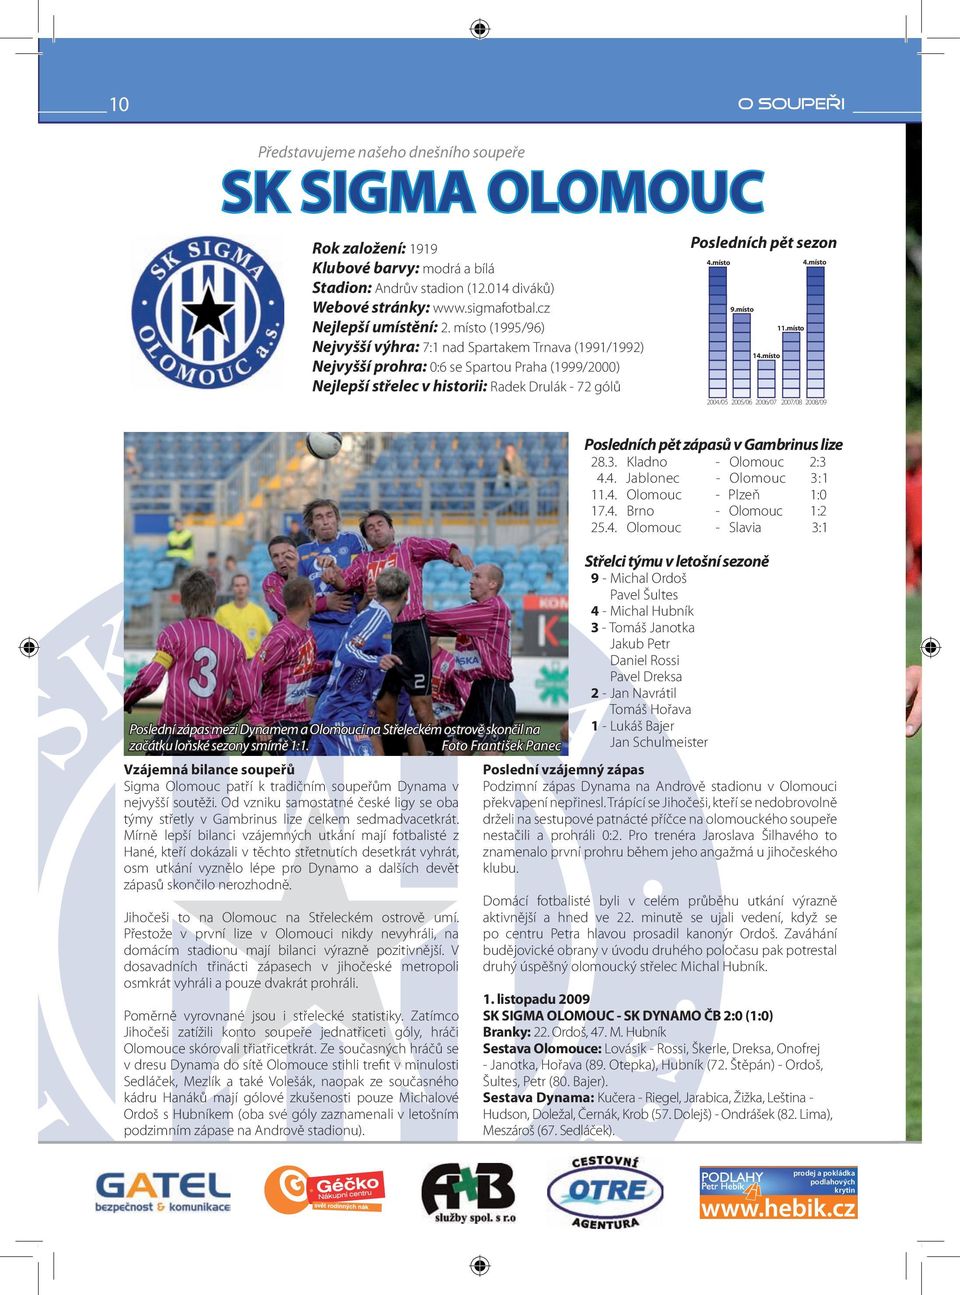 Vzájemná bilance soupeřů Sigma Olomouc patří k tradičním soupeřům Dynama v nejvyšší soutěži. Od vzniku samostatné české ligy se oba týmy střetly v Gambrinus lize celkem sedmadvacetkrát.